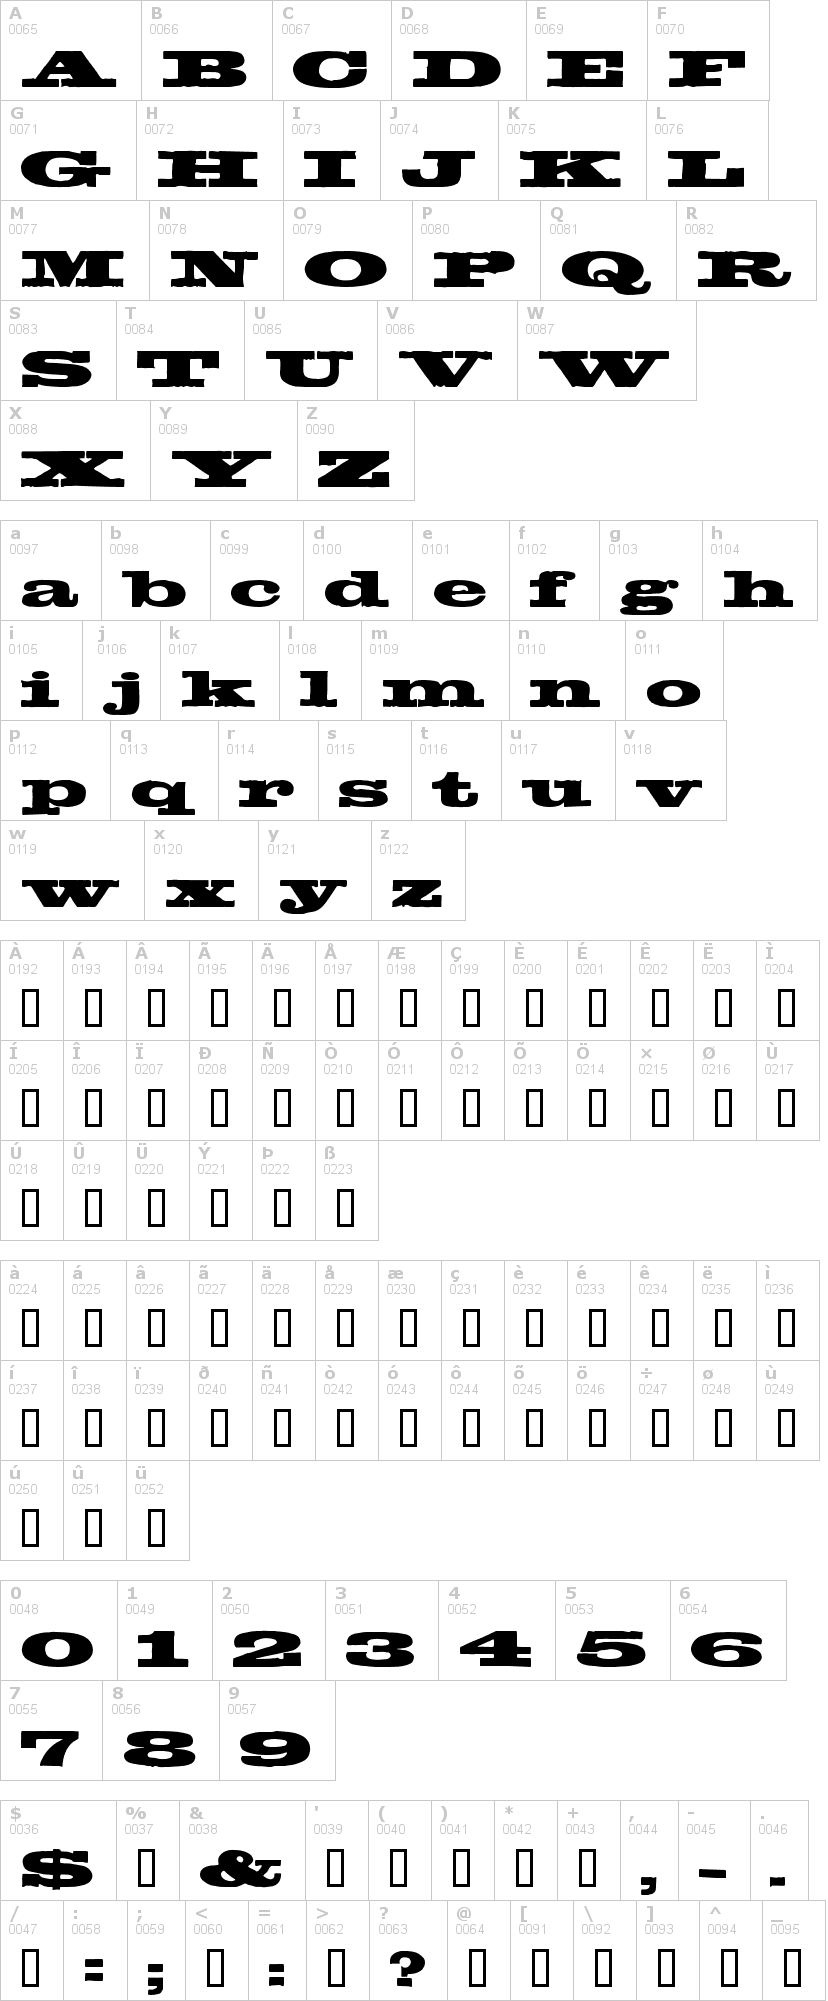 Lettere dell'alfabeto del font egyptientto2 con le quali è possibile realizzare adesivi prespaziati